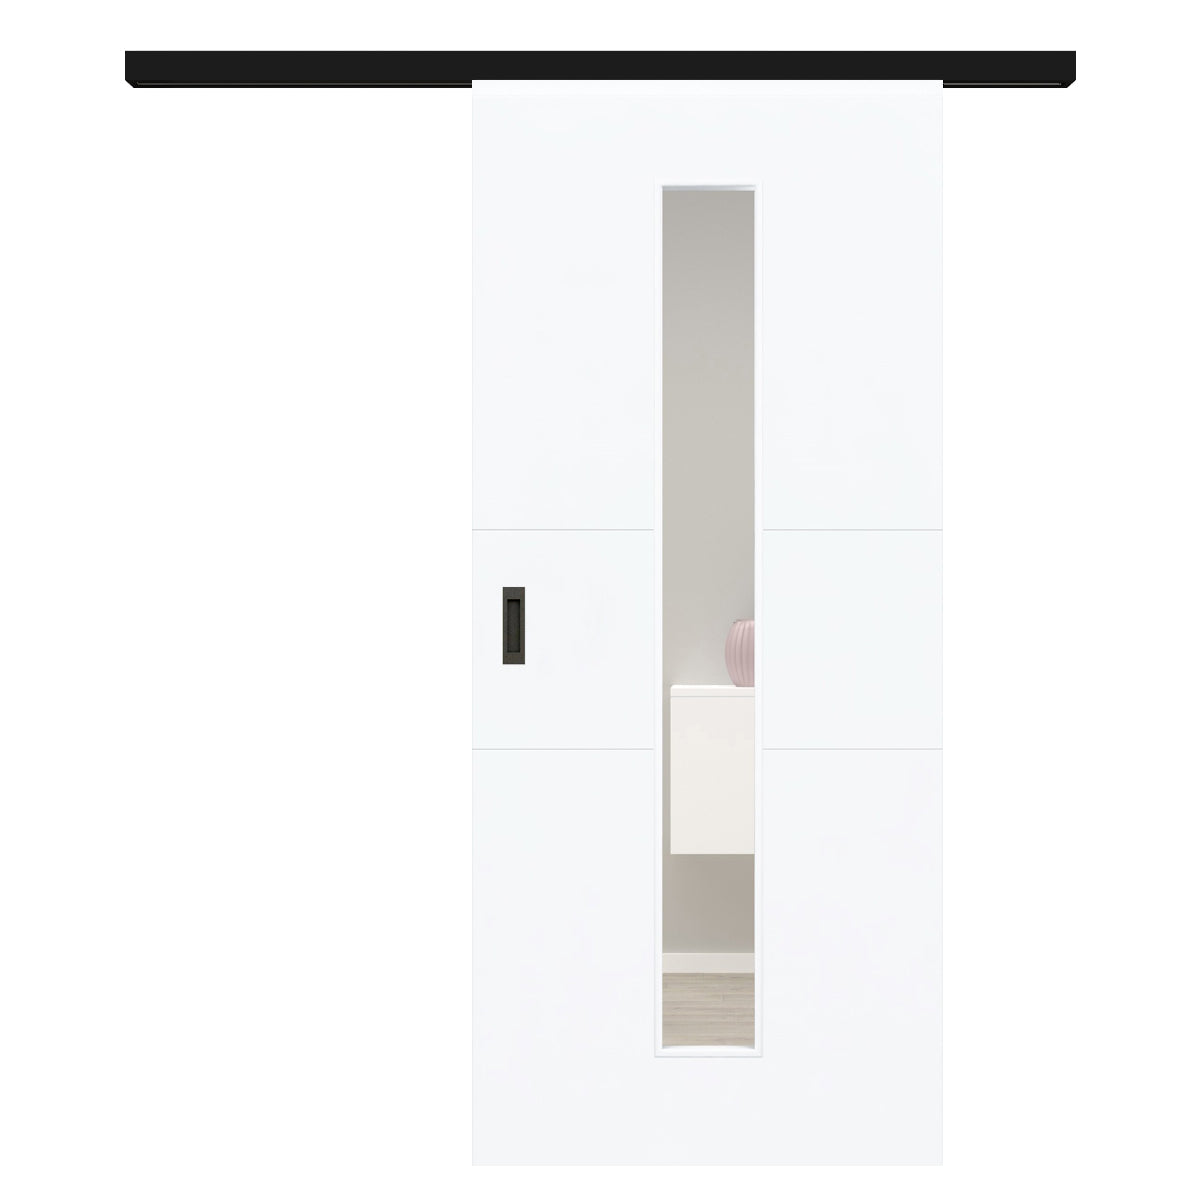 Schiebetür für Set mit schwarzem Laufkasten mit Lichtausschnitt brillant-weiß 2 Rillen quer - Modell Designtür Q23LAM